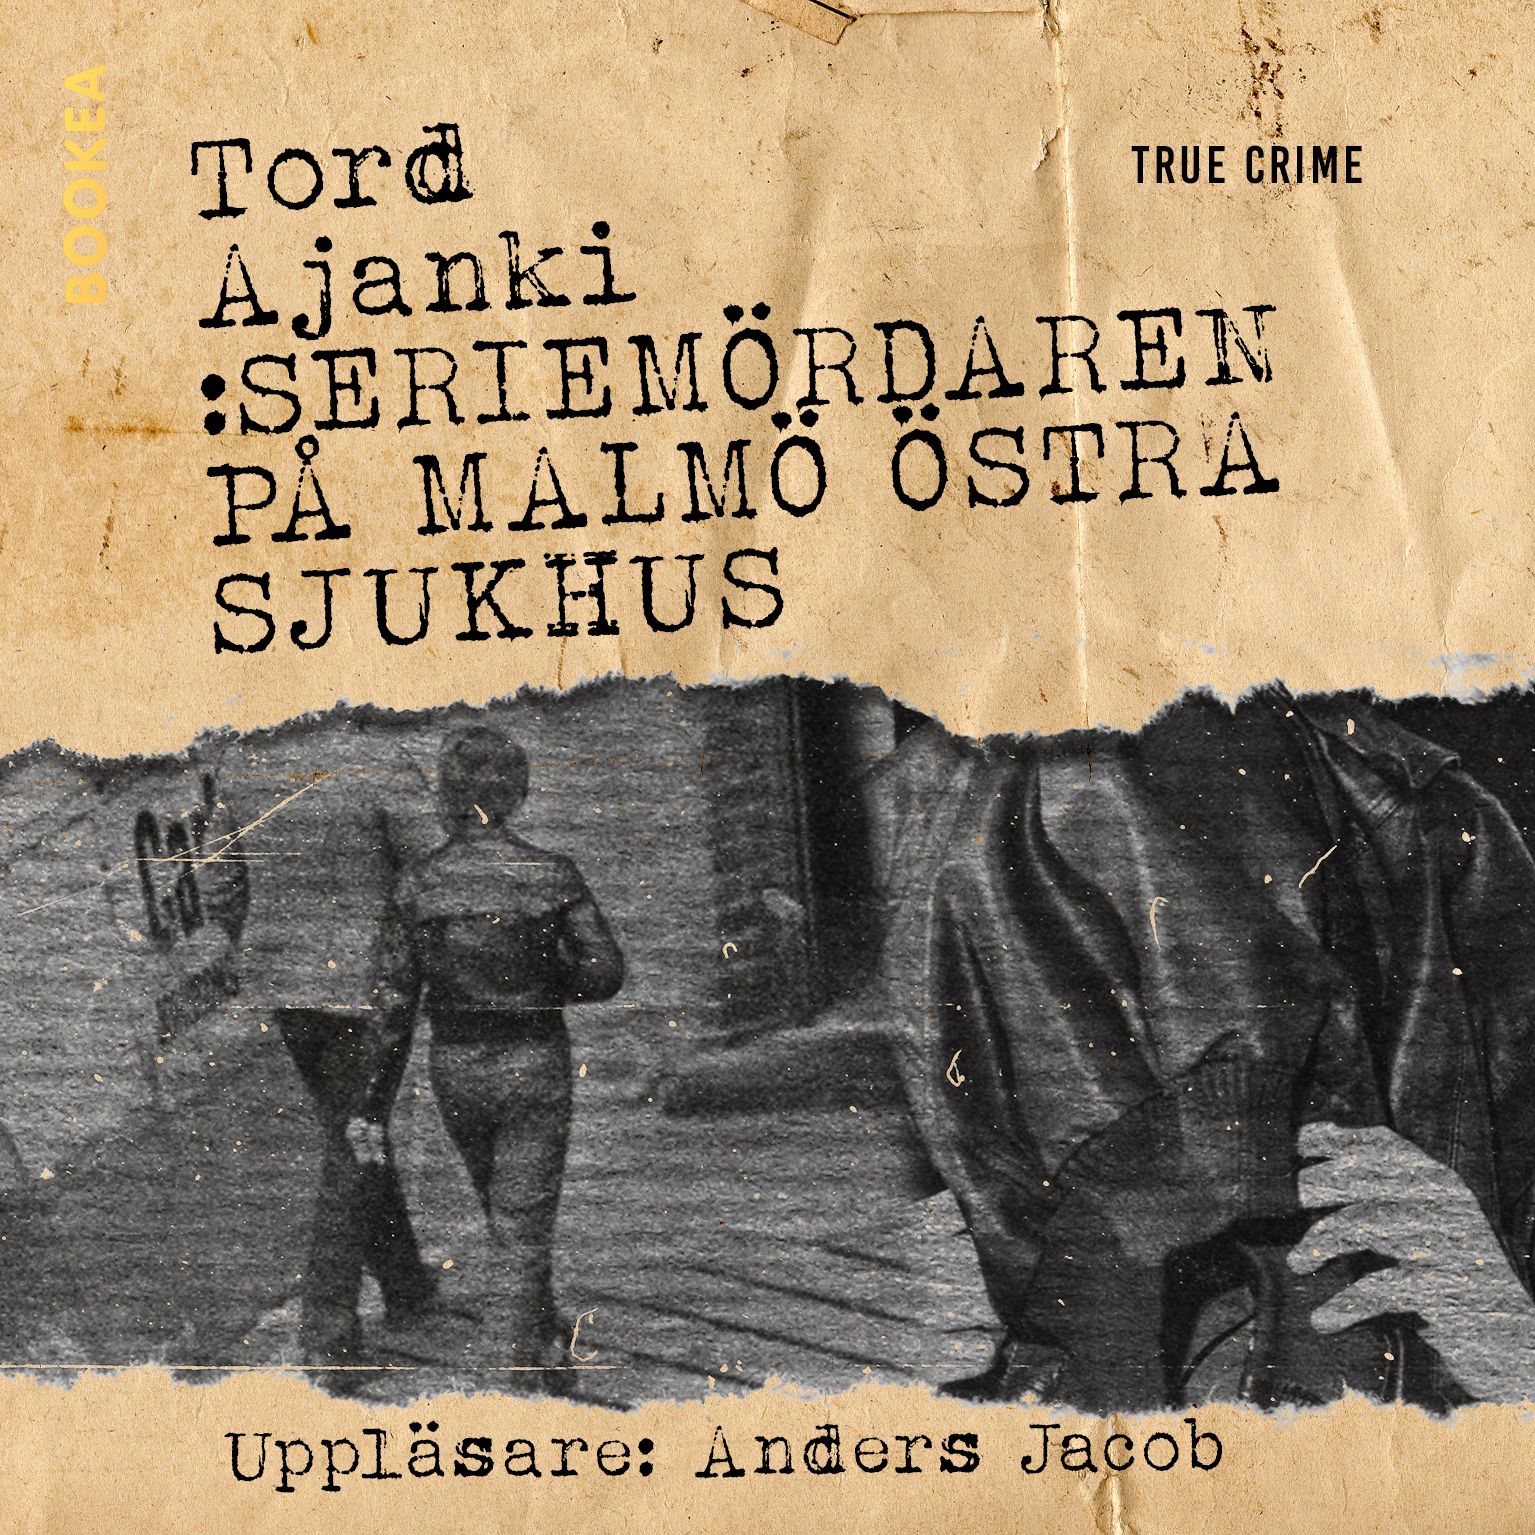 Seriemördaren på Malmö östra sjukhus, audiobook by Tord Ajanki